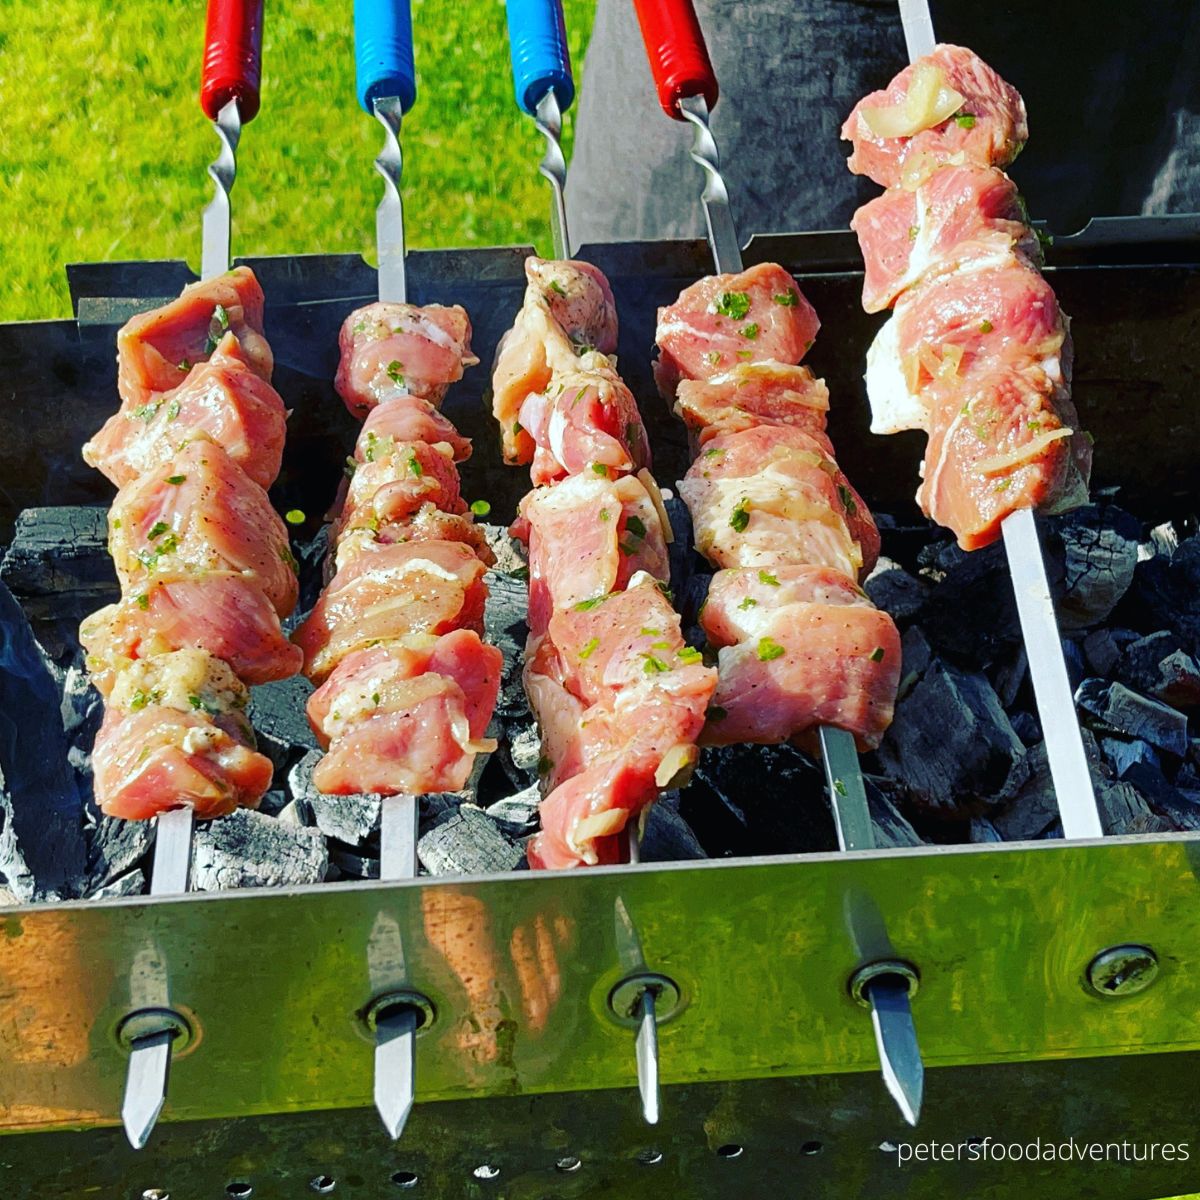 skewered kebabs cooking over grill